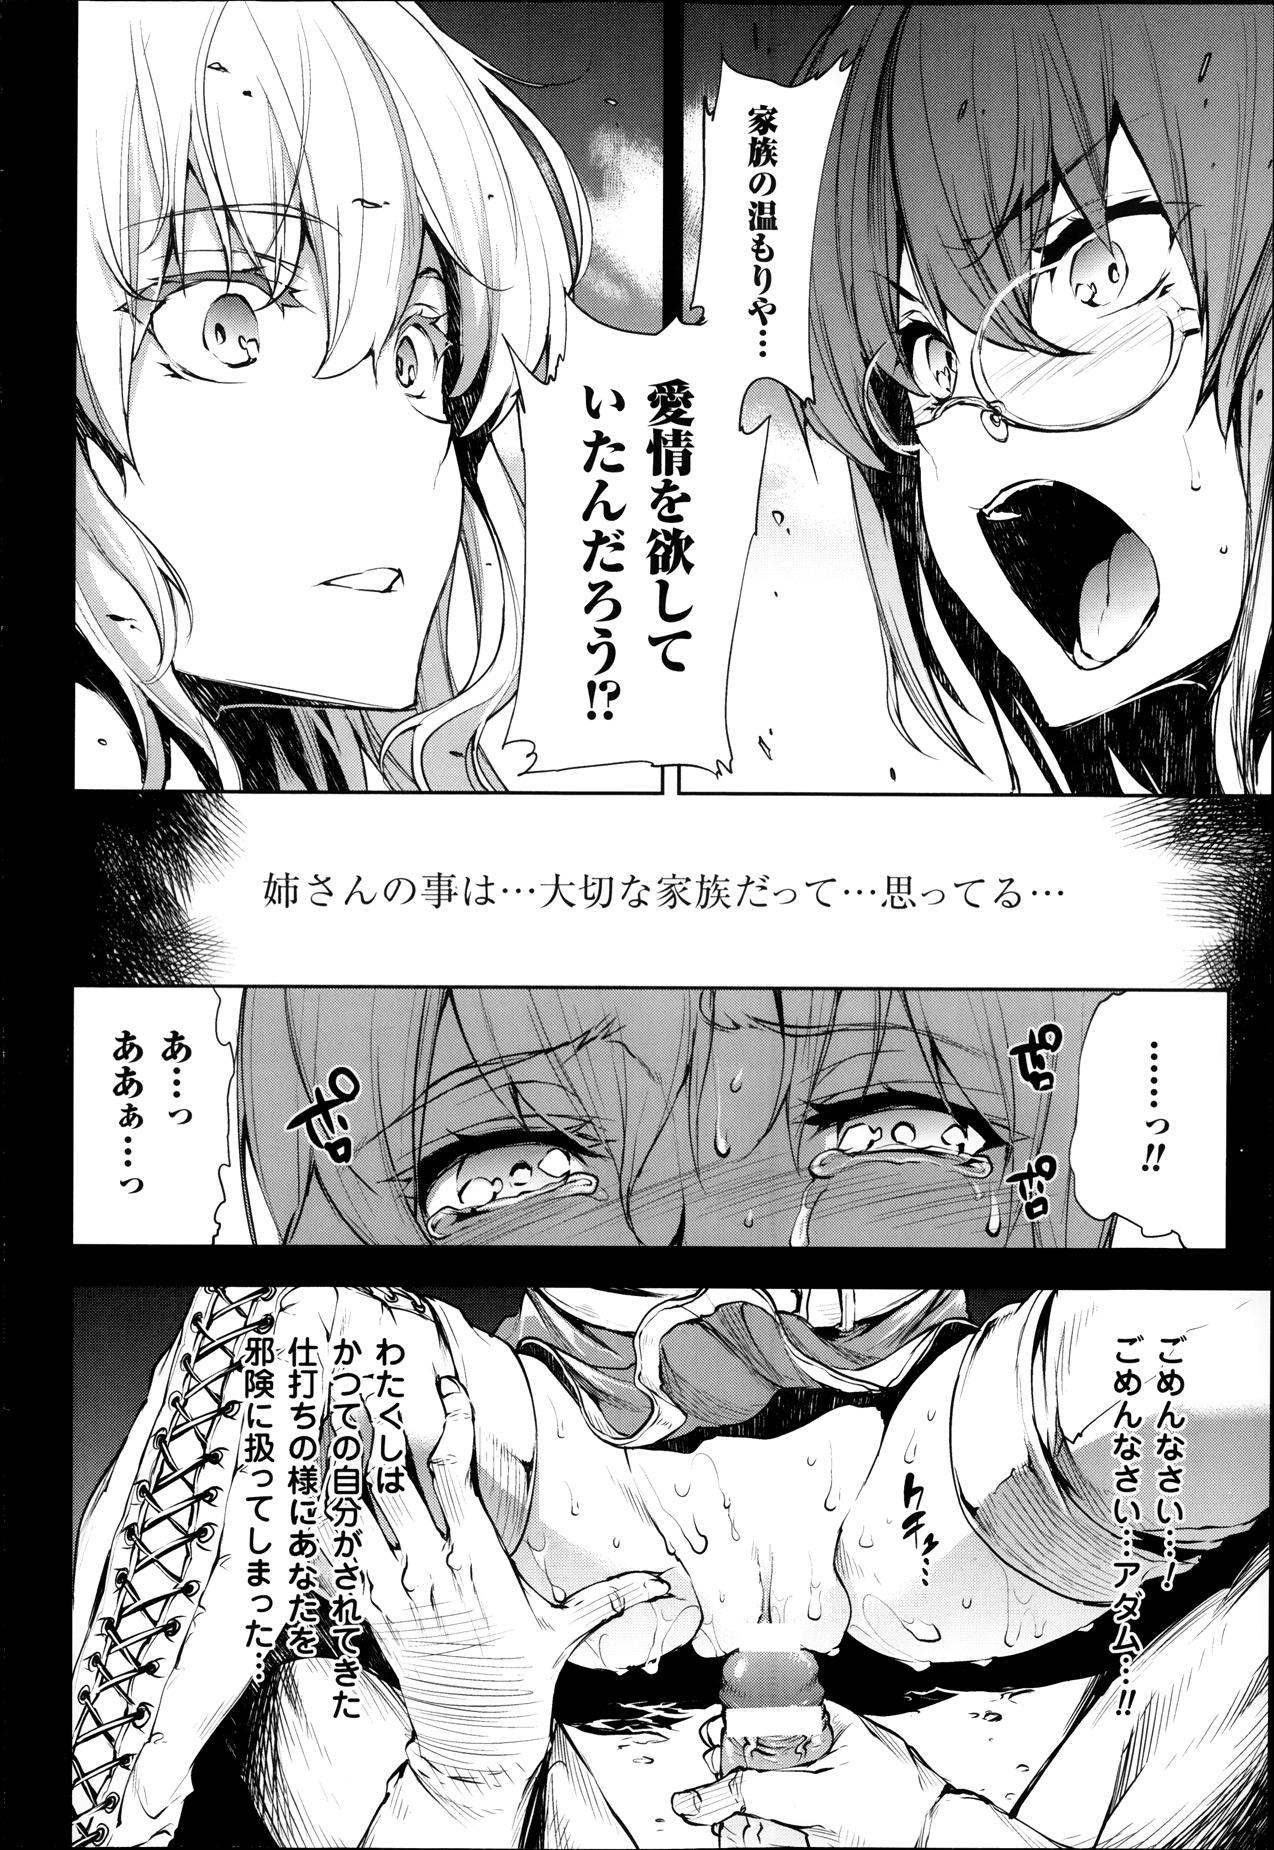 [Erect Sawaru] Shinkyoku no Grimoire -PANDRA saga 2nd story- Ch 07-9.5 75